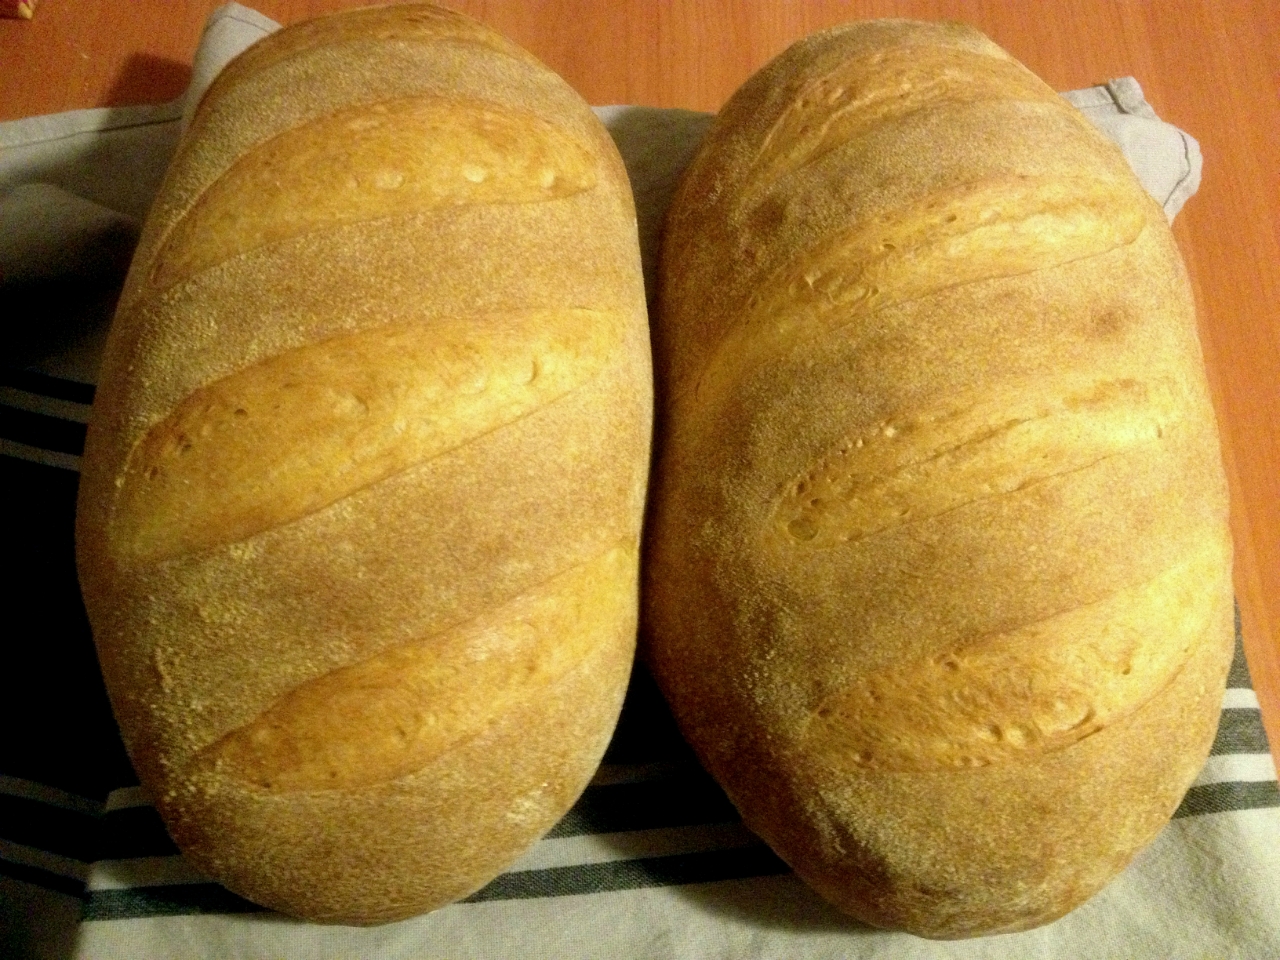 Pane di grano "Rapa" (versione con focolare)